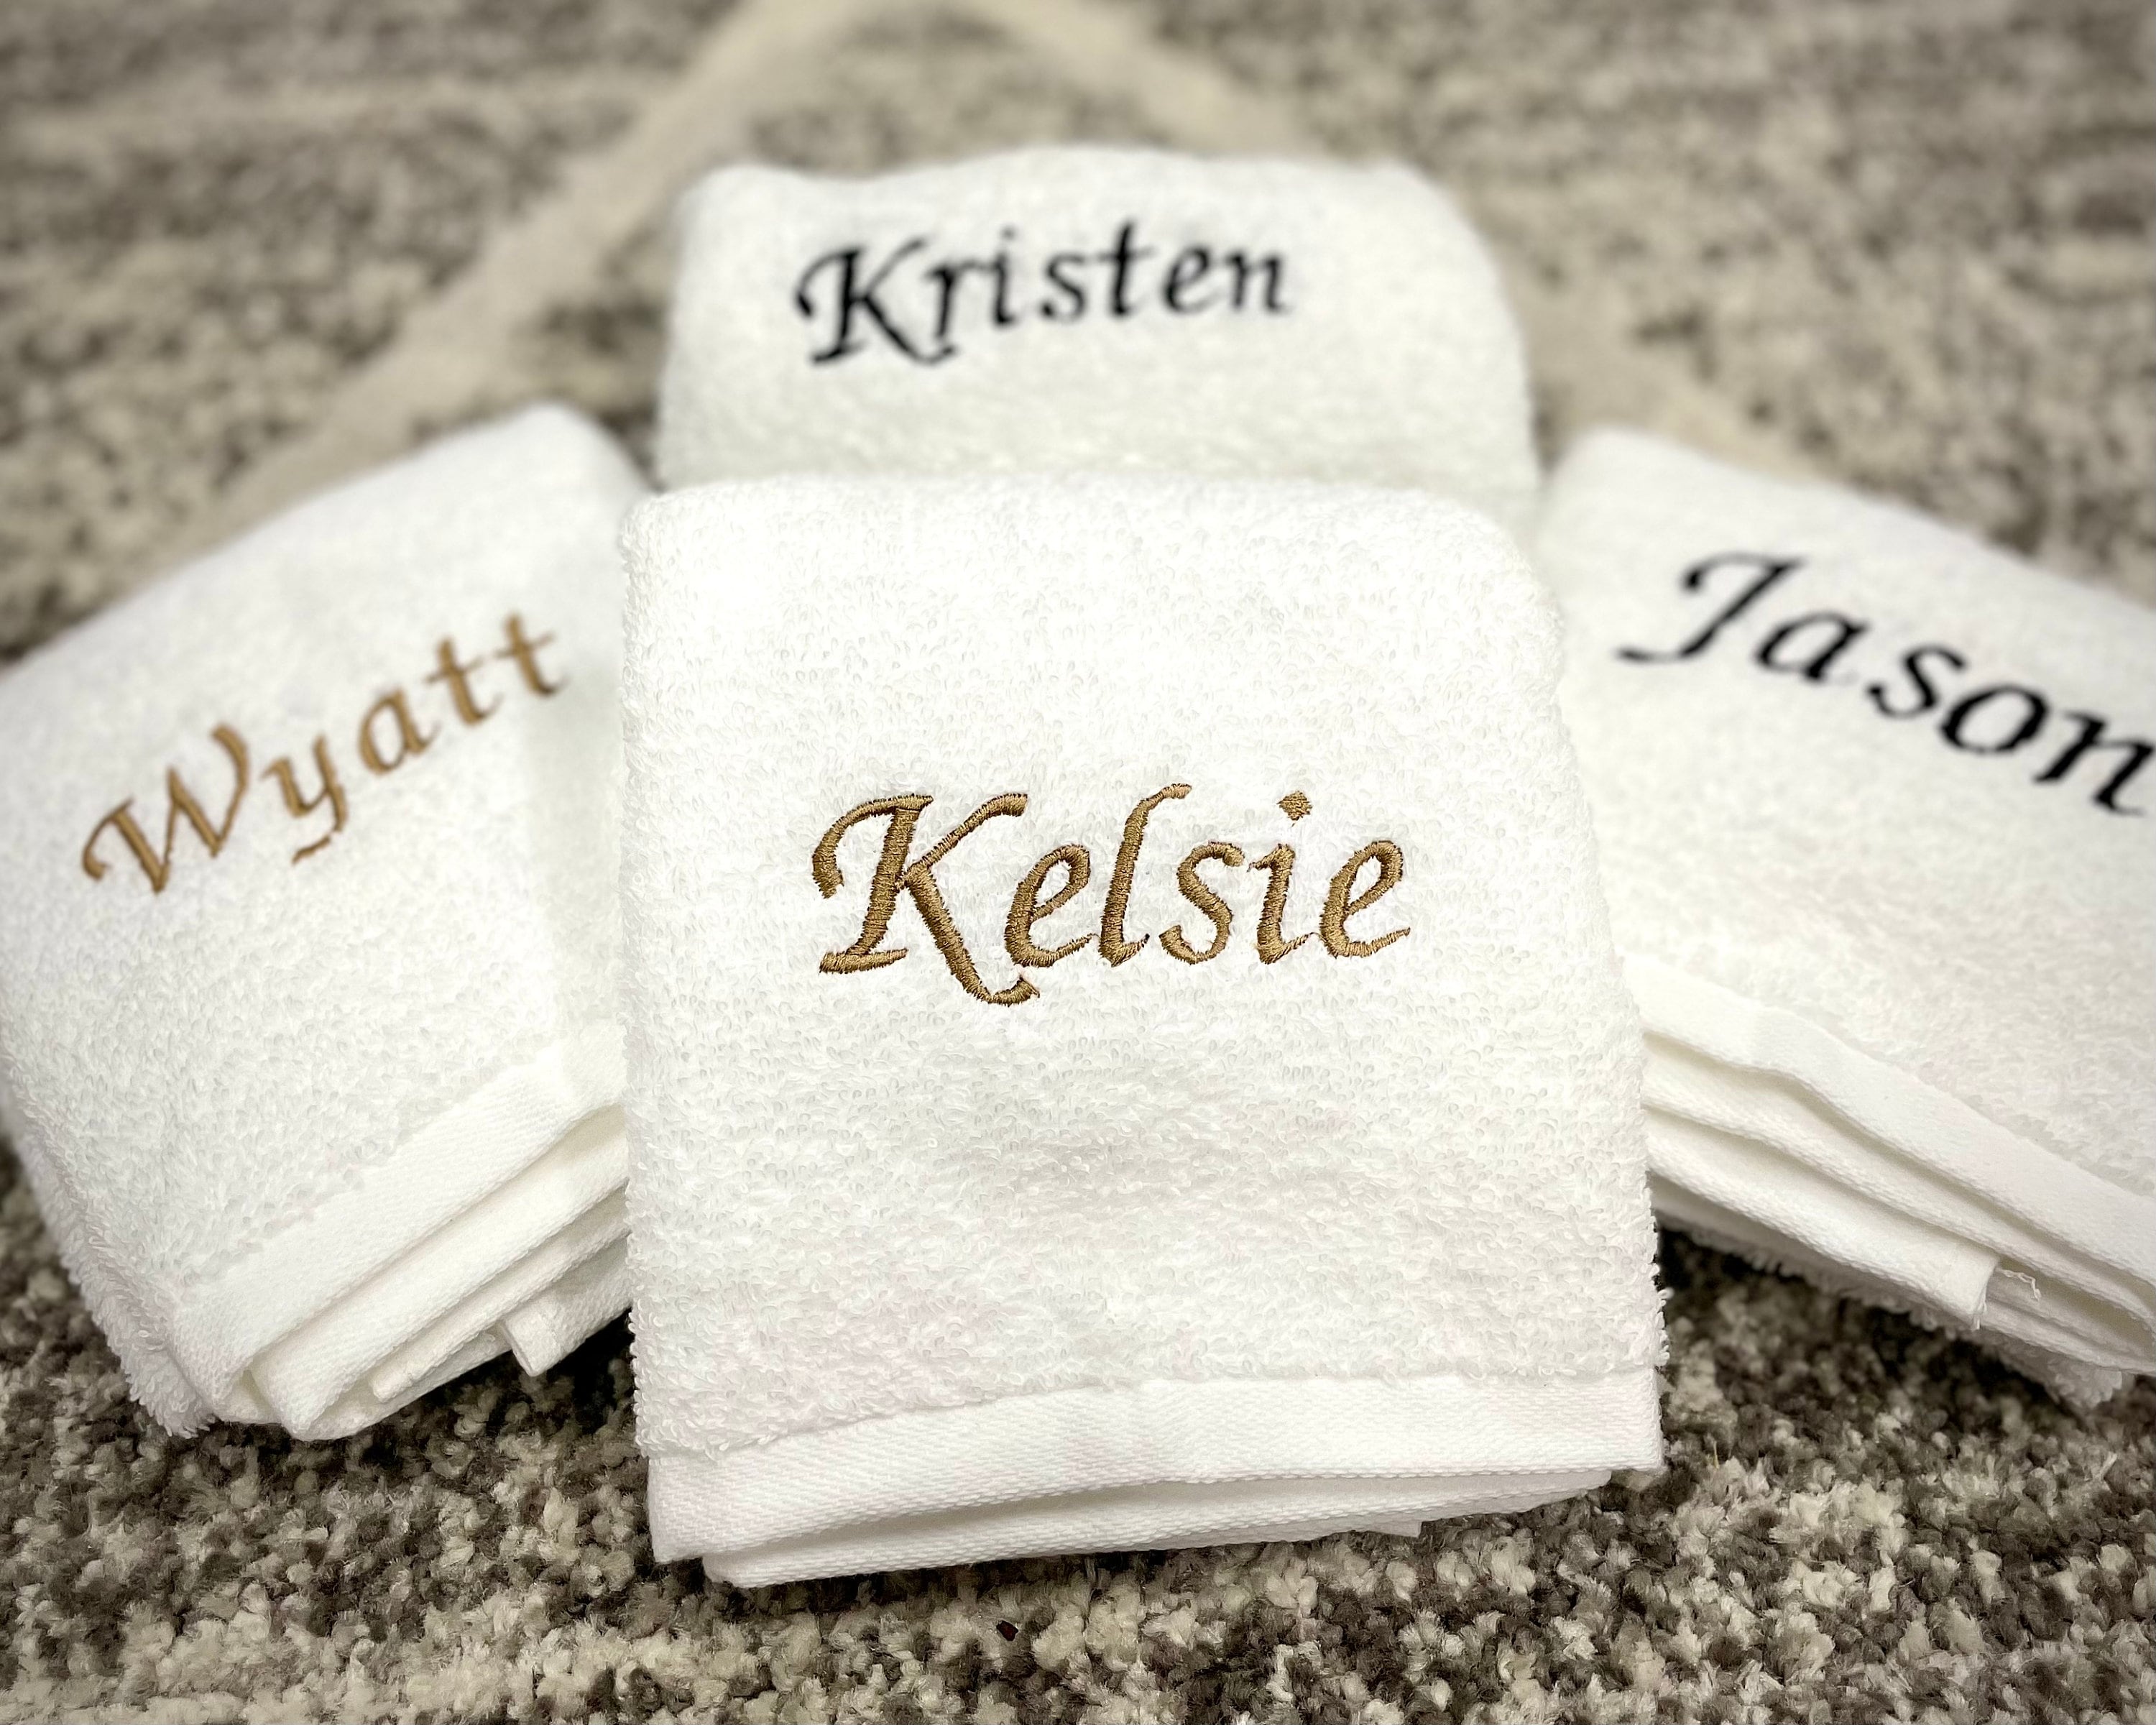 Toalla de mano con monograma, tamaño 16 x 26 pulgadas, toalla bordada  personalizada, toalla decorativa personalizada para baño, cocina y  gimnasio